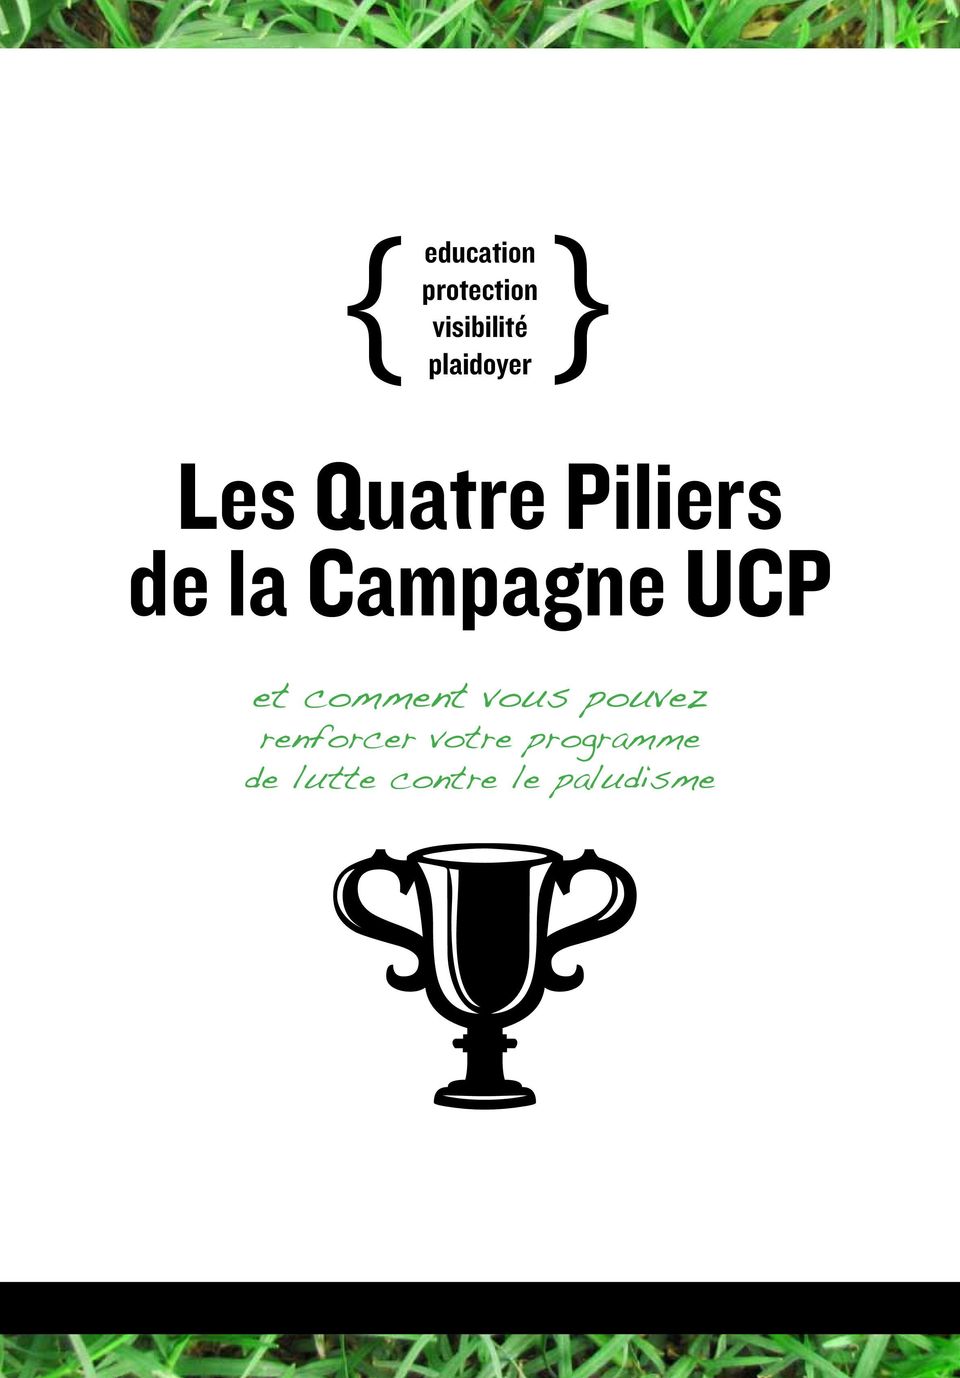 Campagne UCP et comment vous pouvez